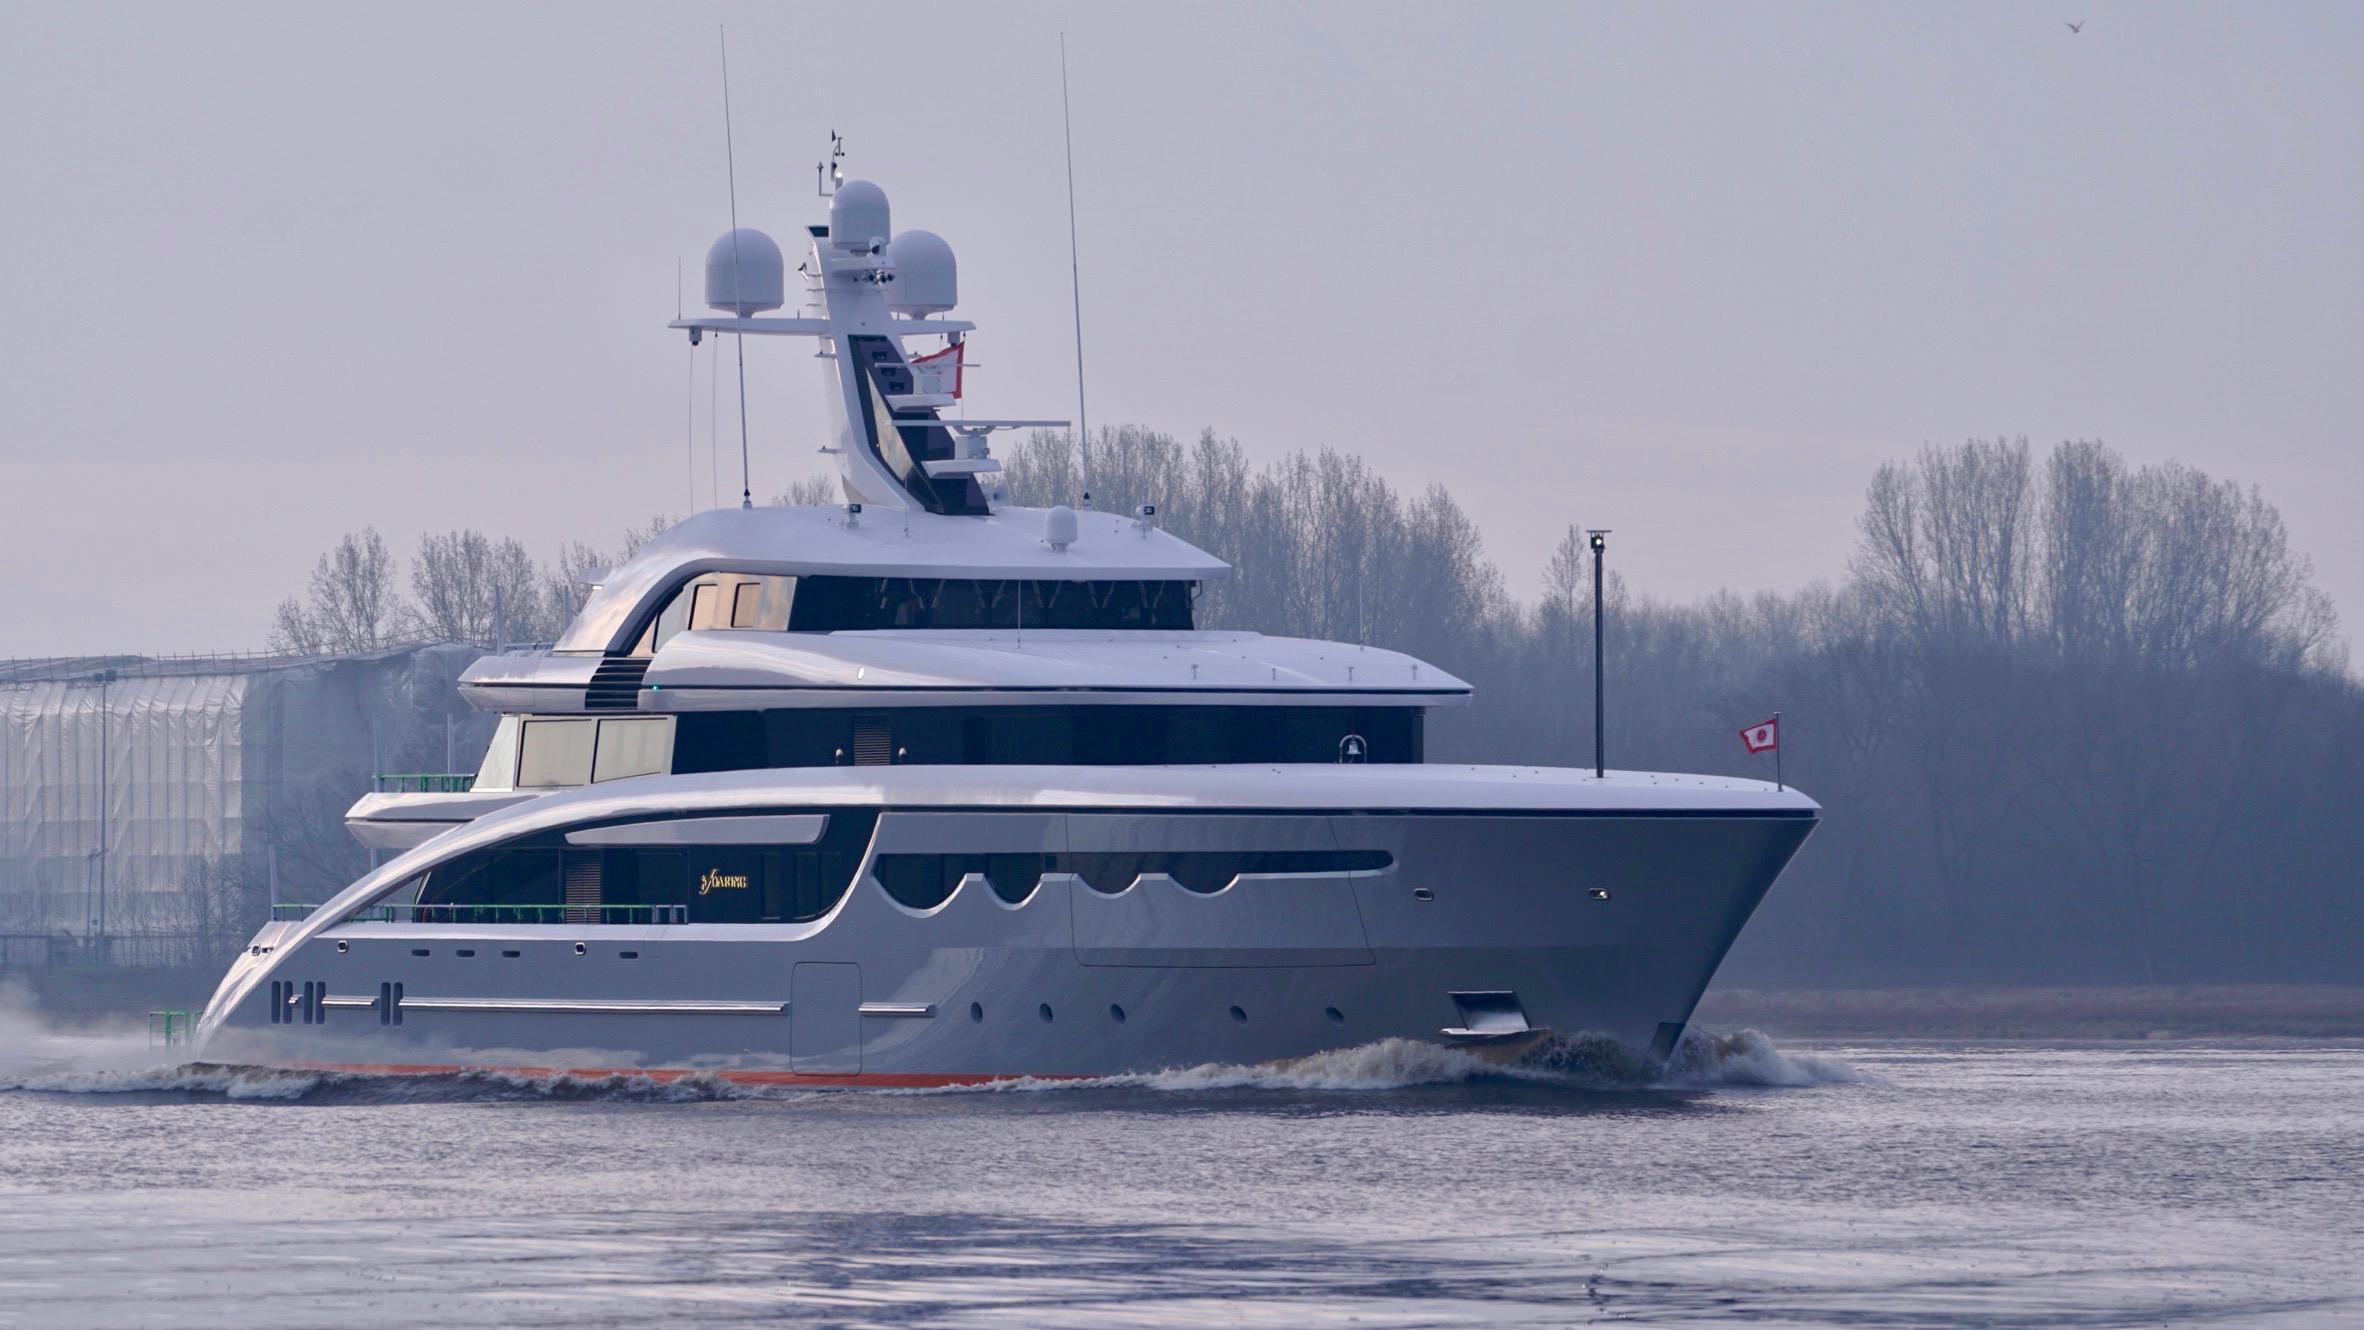 luxus yacht buchen